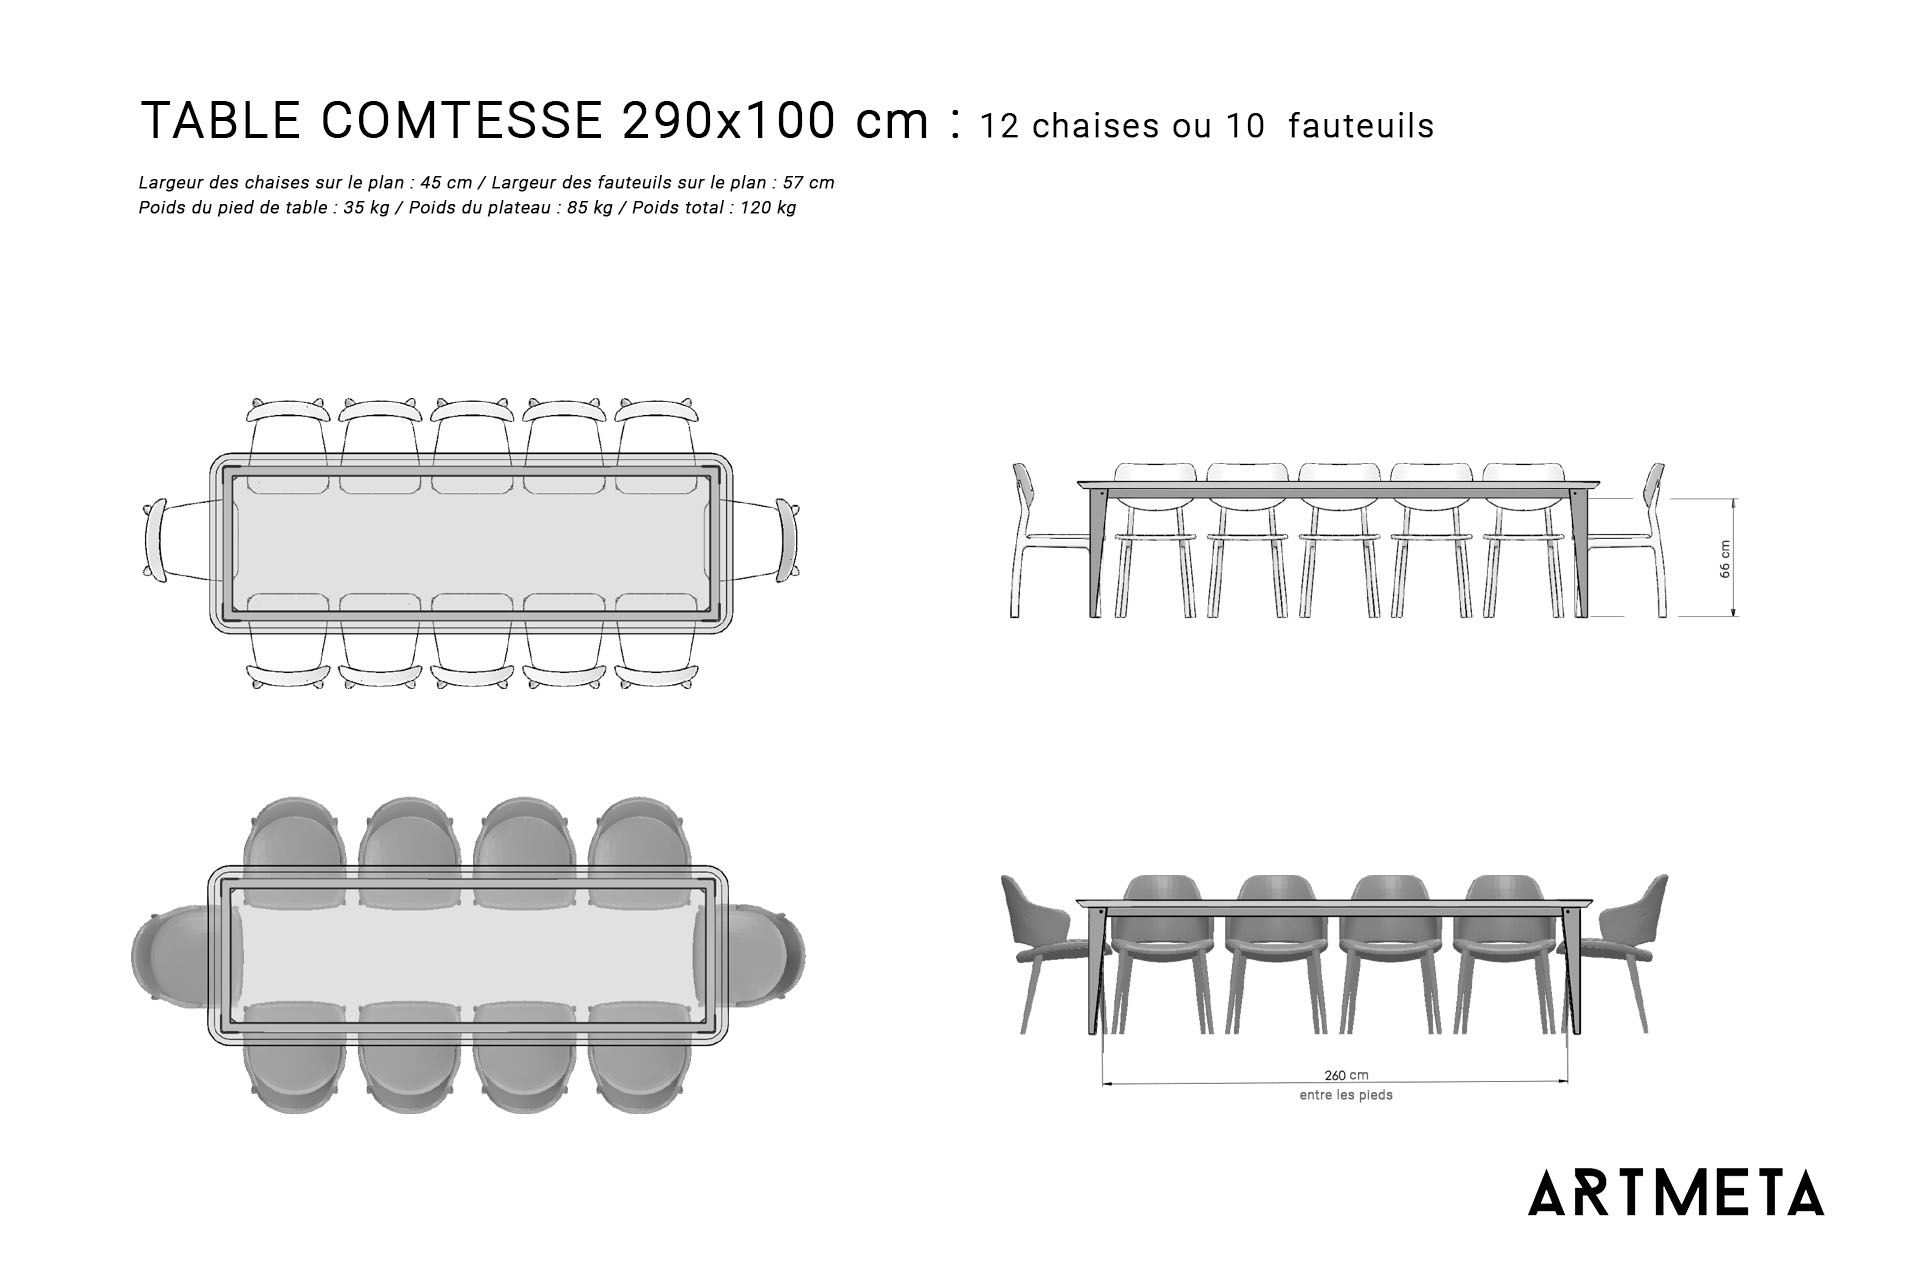 Guide des dimensions / Table à manger pour 10 à 12 personnes / Table en métal et bois modèle Comtesse / Fabrication française ARTMETA